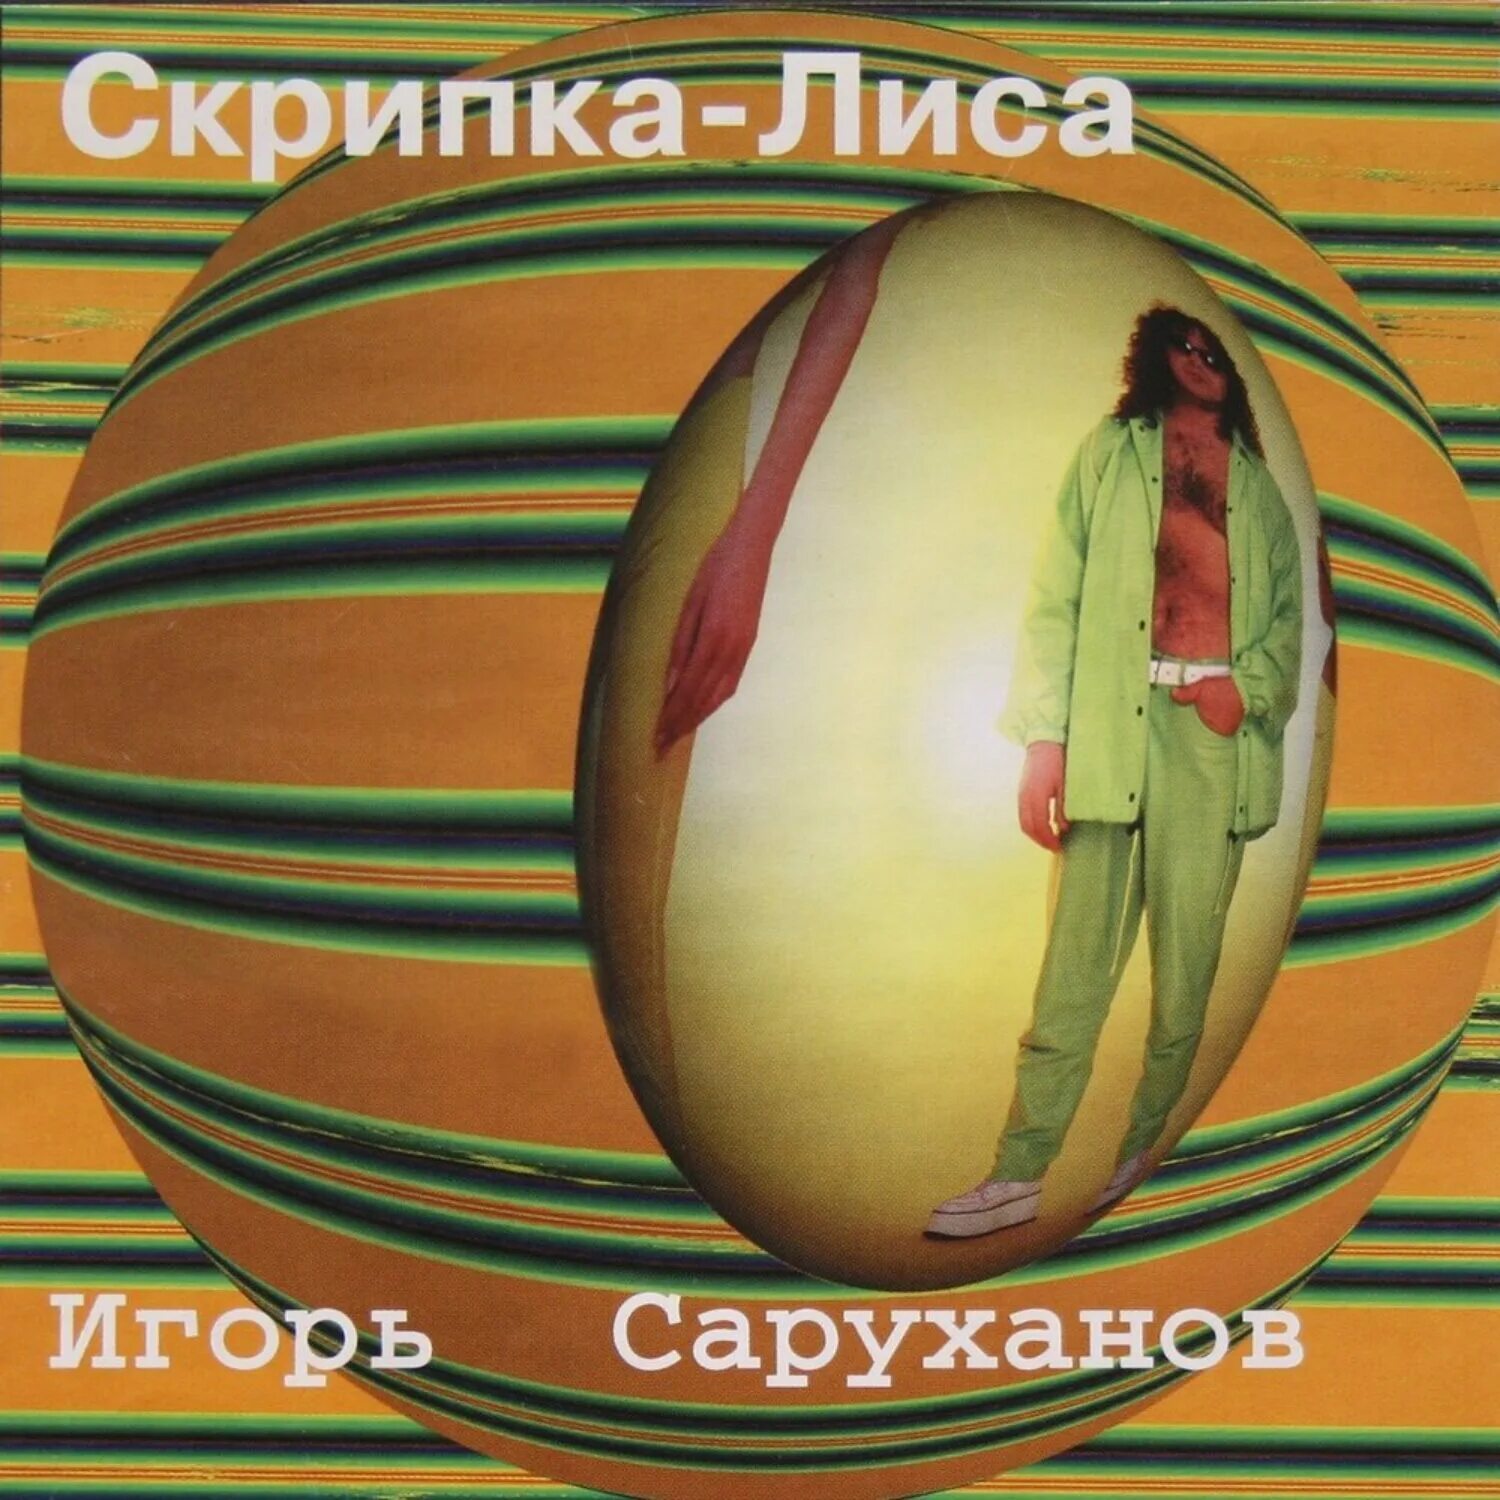 Песня саруханова скрипка лиса. Скрипка лиса Игоря Саруханова. 1997 - Скрипка-лиса.